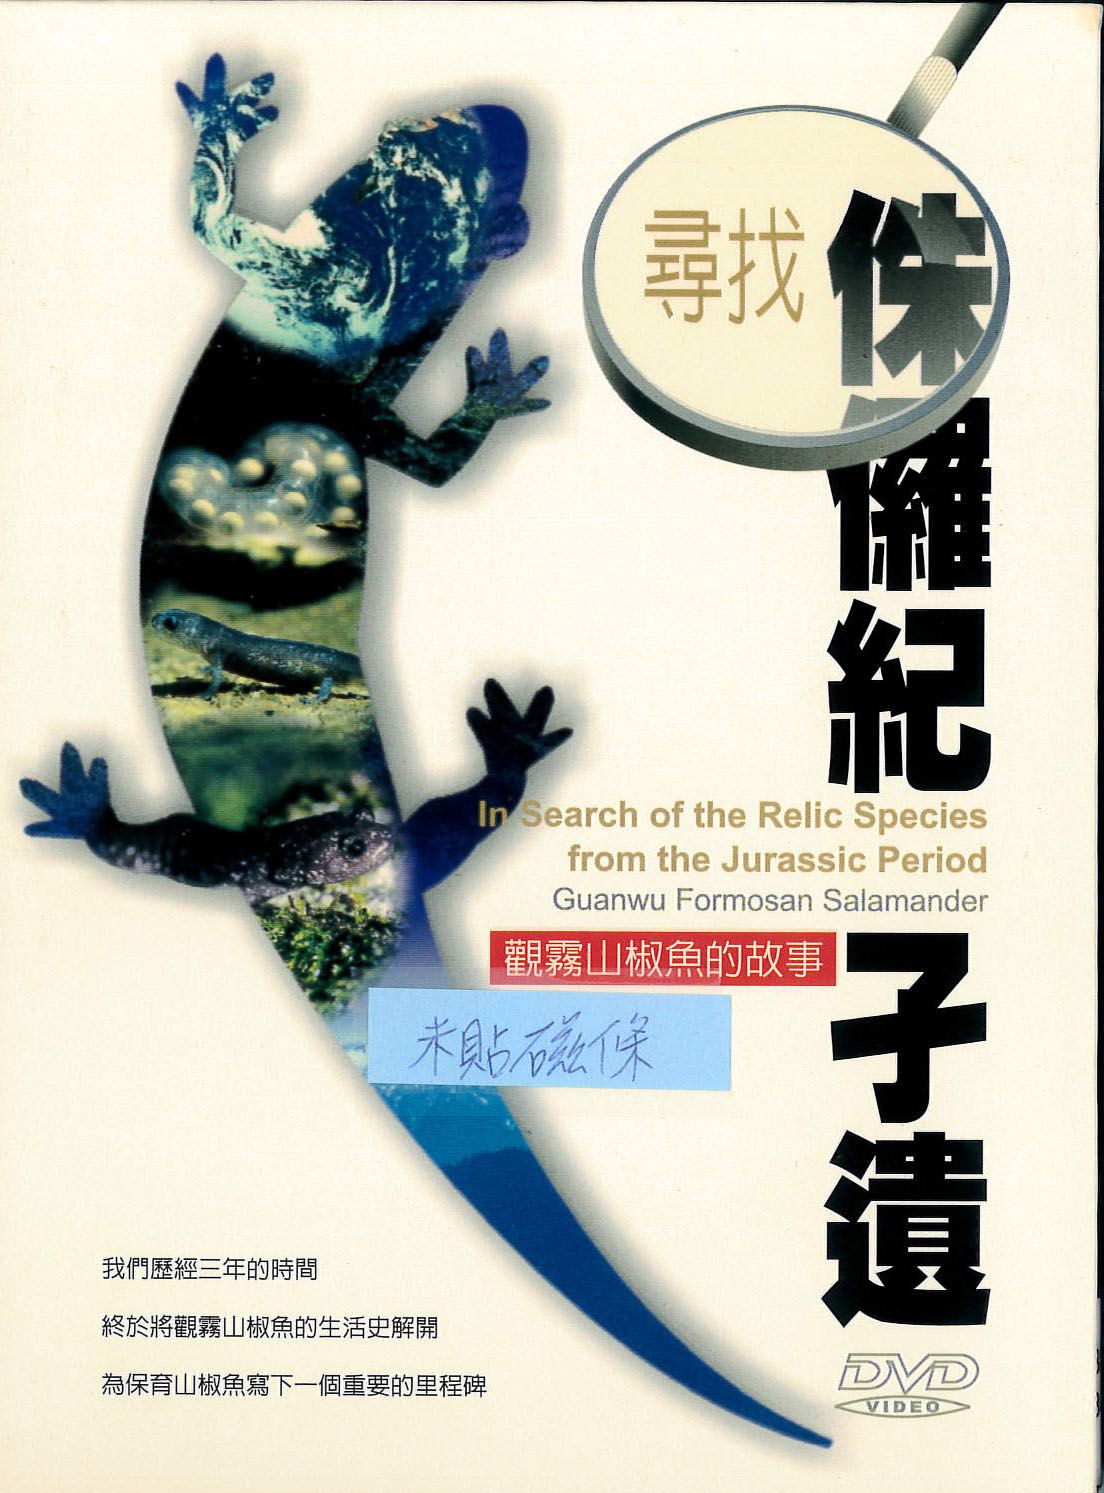 尋找侏儸紀孑遺 : 觀霧山椒魚的故事 = In searchof the relic species from the Jurassic period Guanwu Formosan Salamander